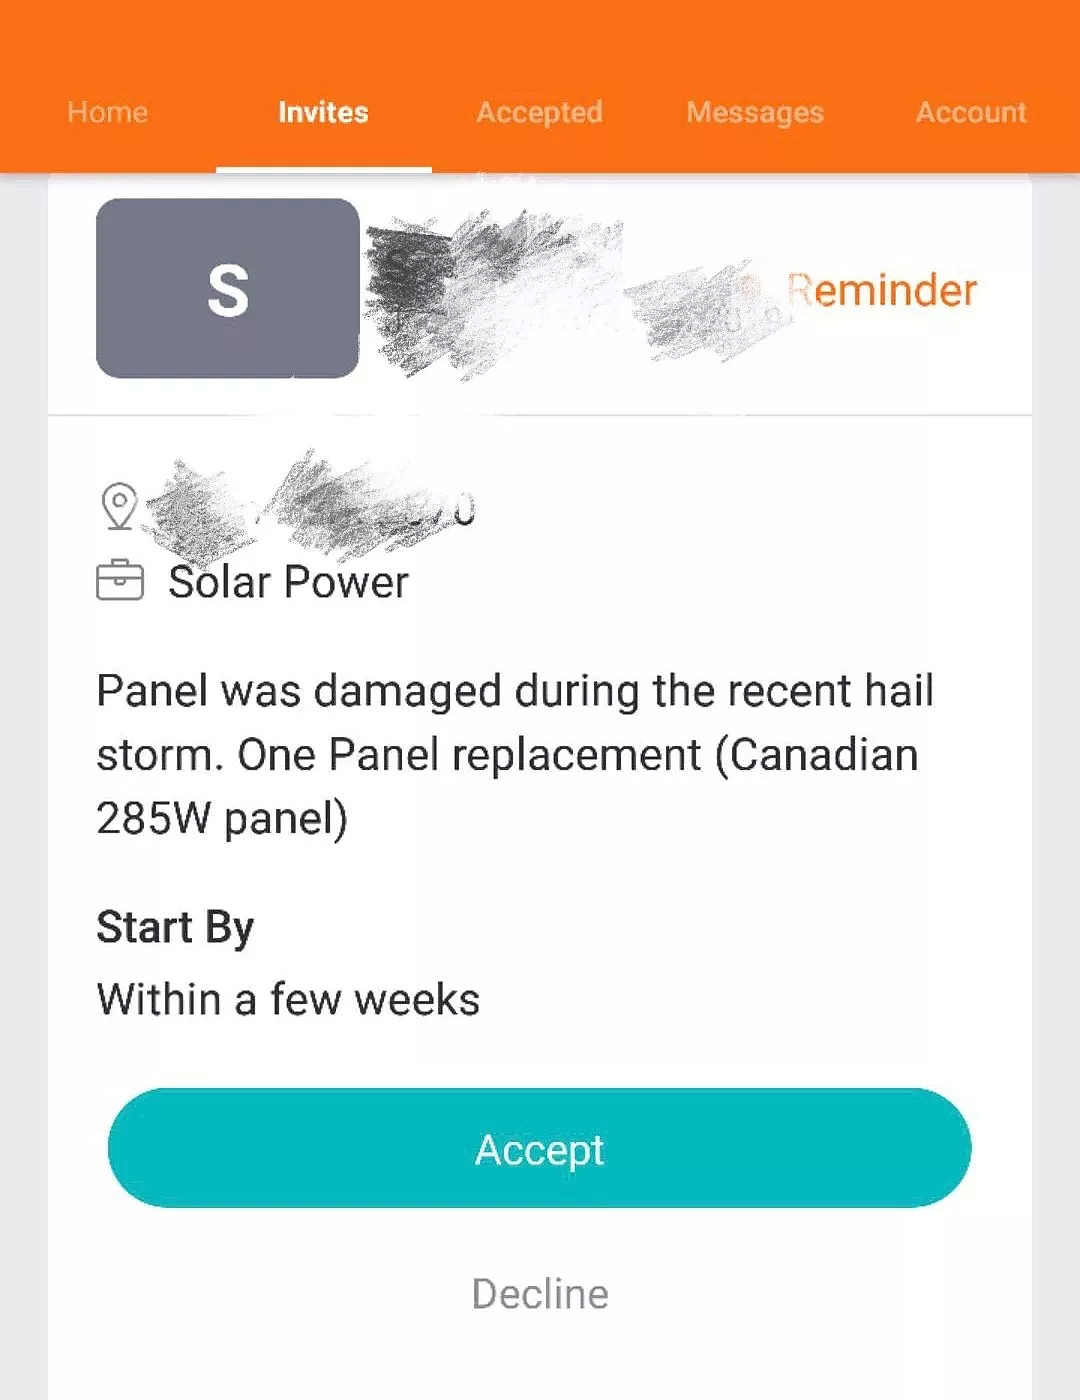 澳洲家庭已深陷太阳能隐患危机！专业太阳能公司说：安装太阳能没那么简单！太阳能投资者必读！ - 10